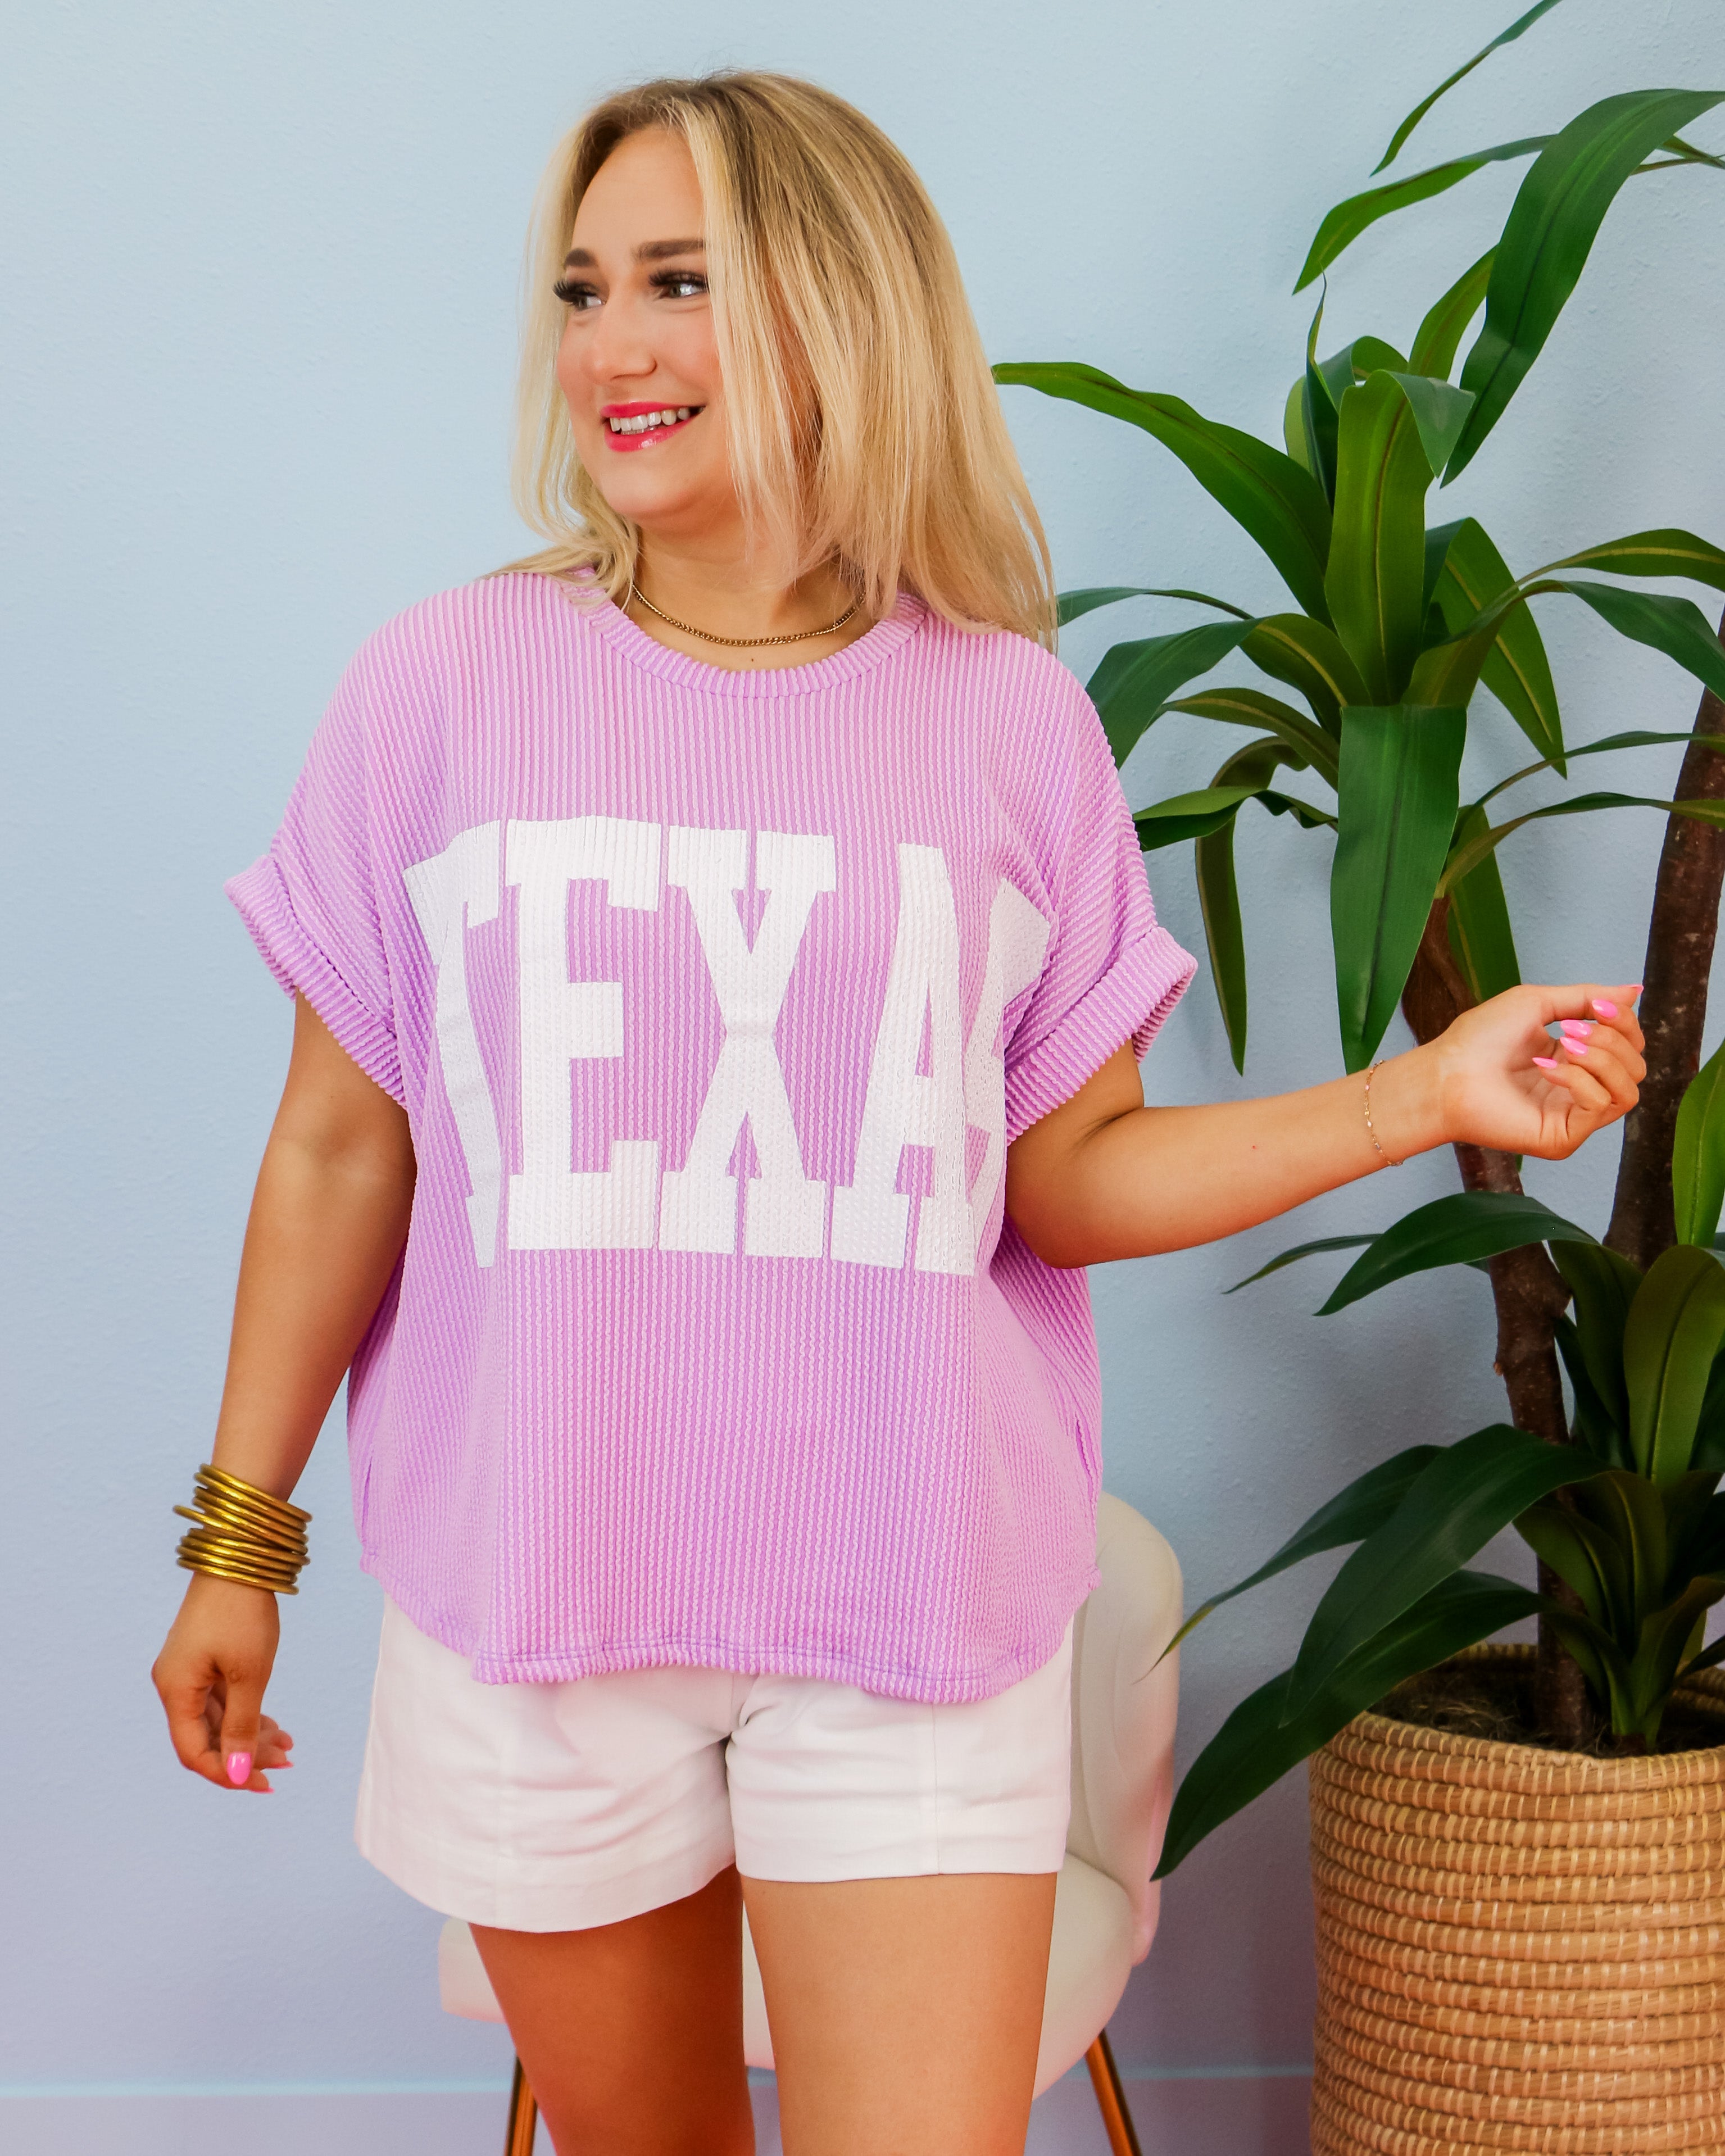 'TEXAS' Comfy Oversize Graphic Sweatshirt Top in Light Purple